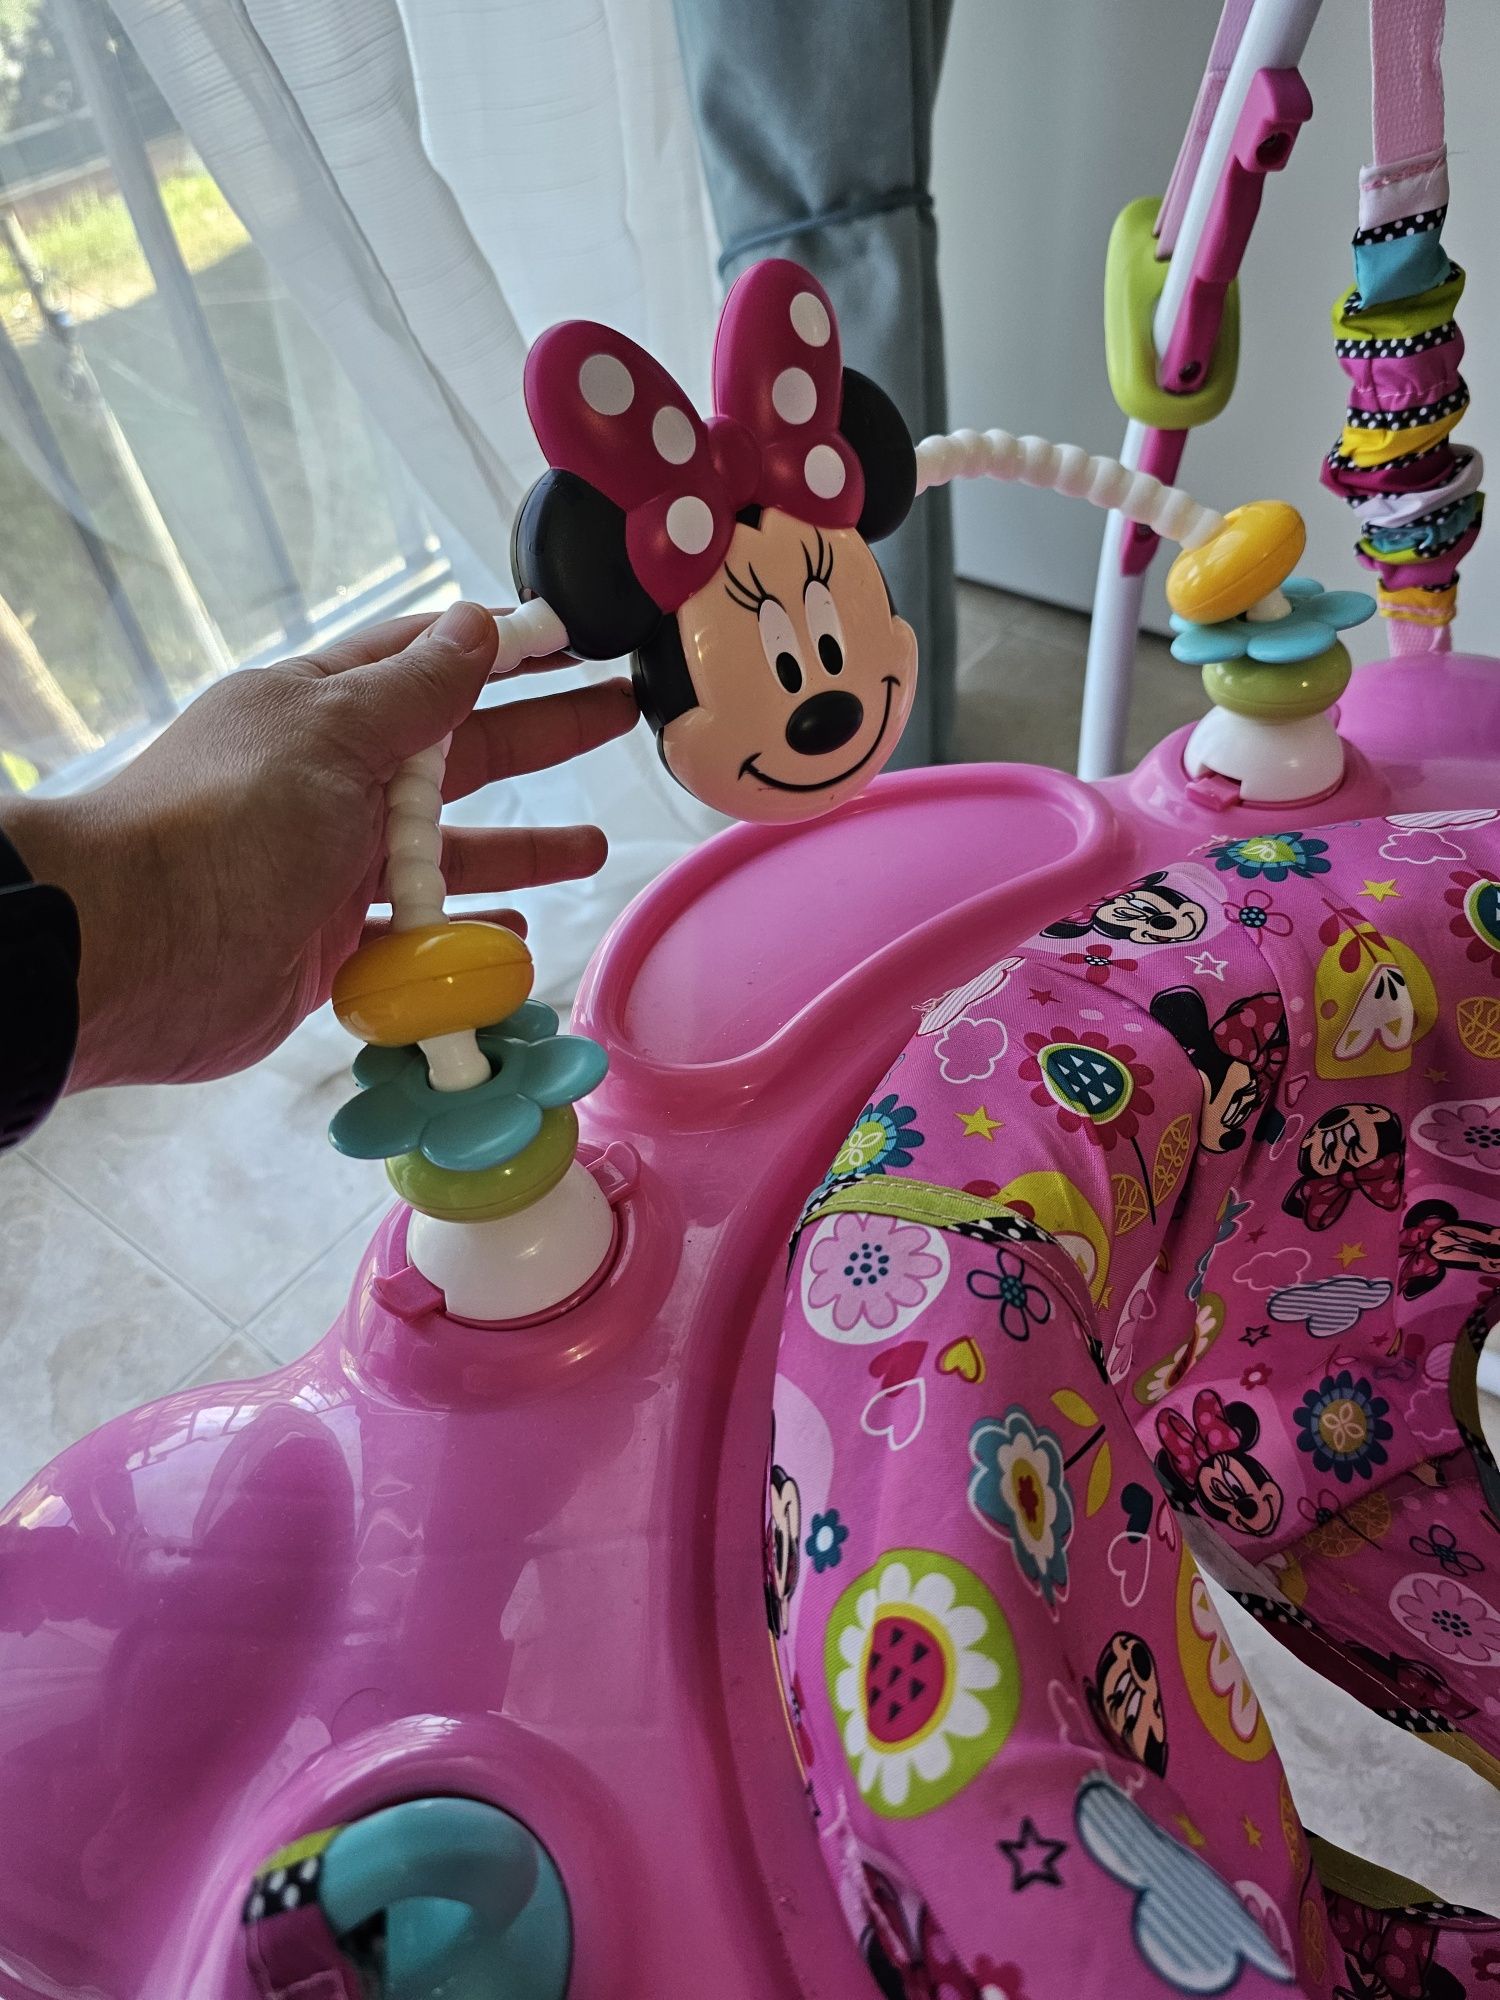 Disney Cadeira baloiço para bebé da Minnie Mouse Peekaboo